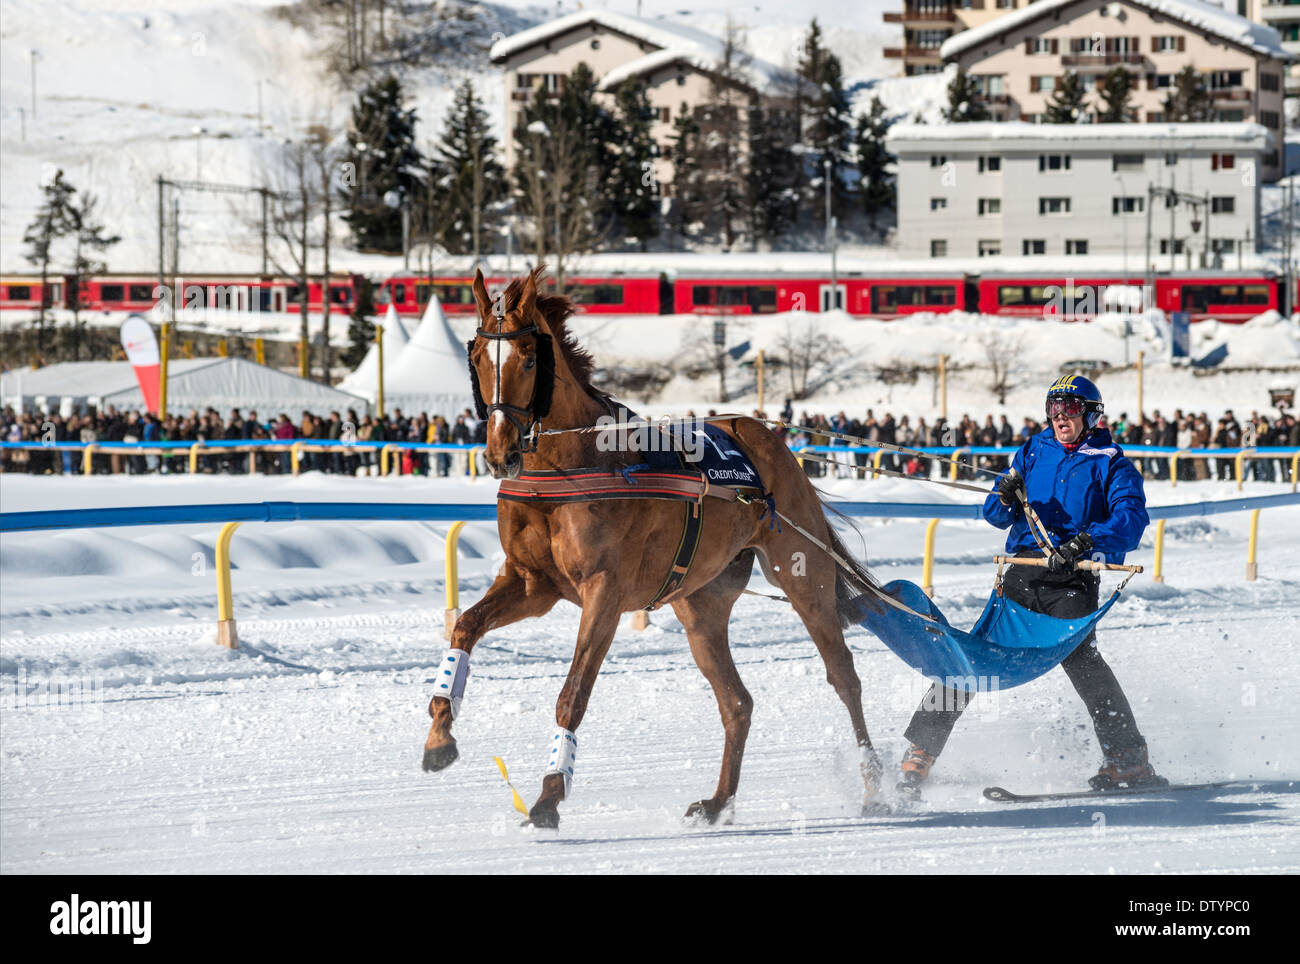 White Turf 2014 ski joering horse race in front of St.Moritz Dorf, Switzerland Stock Photo